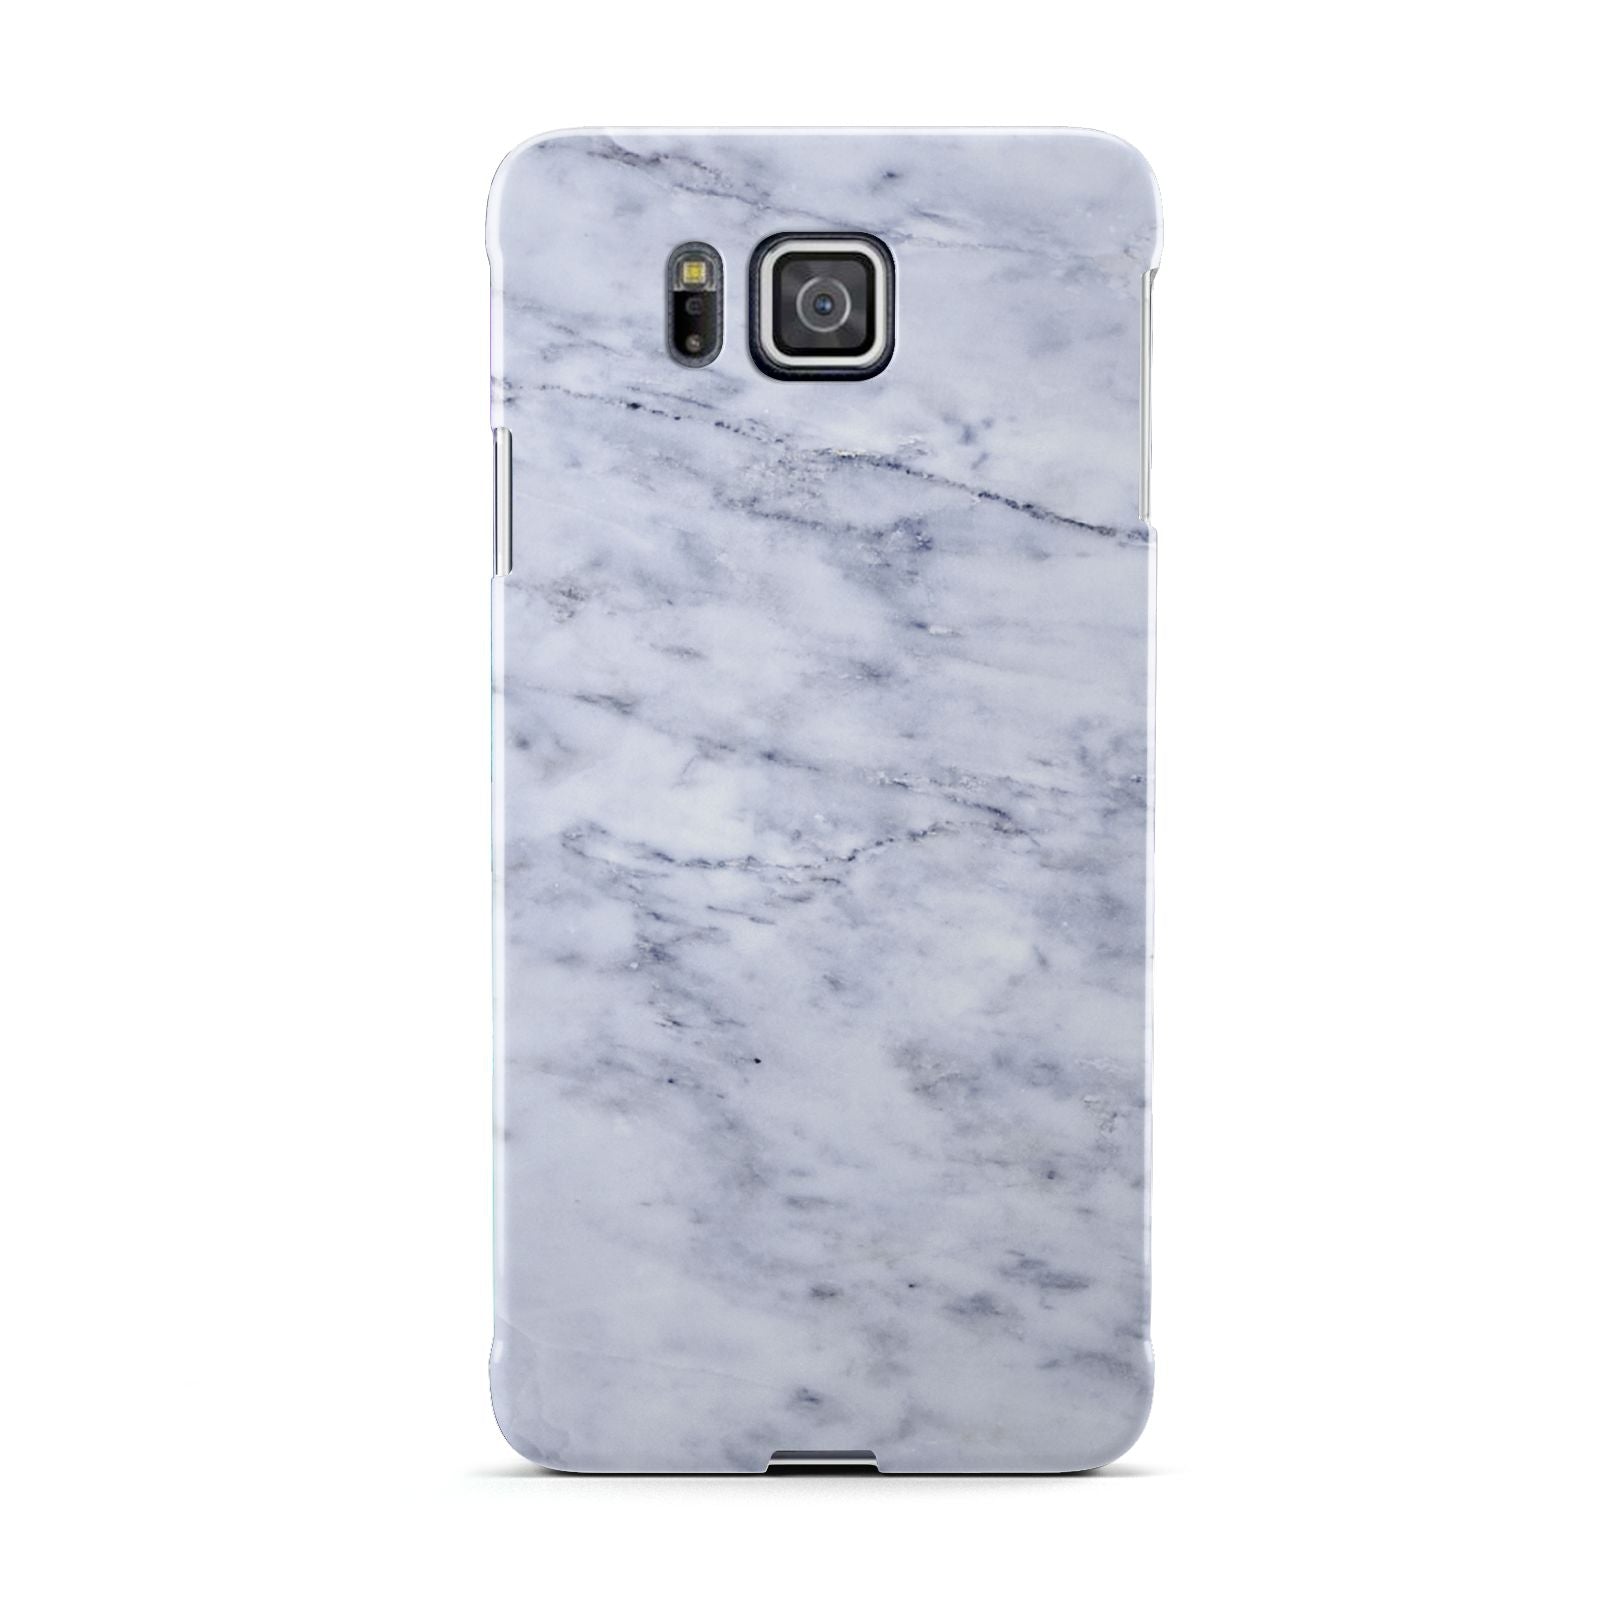 Faux Carrara Marble Print Samsung Galaxy Alpha Case